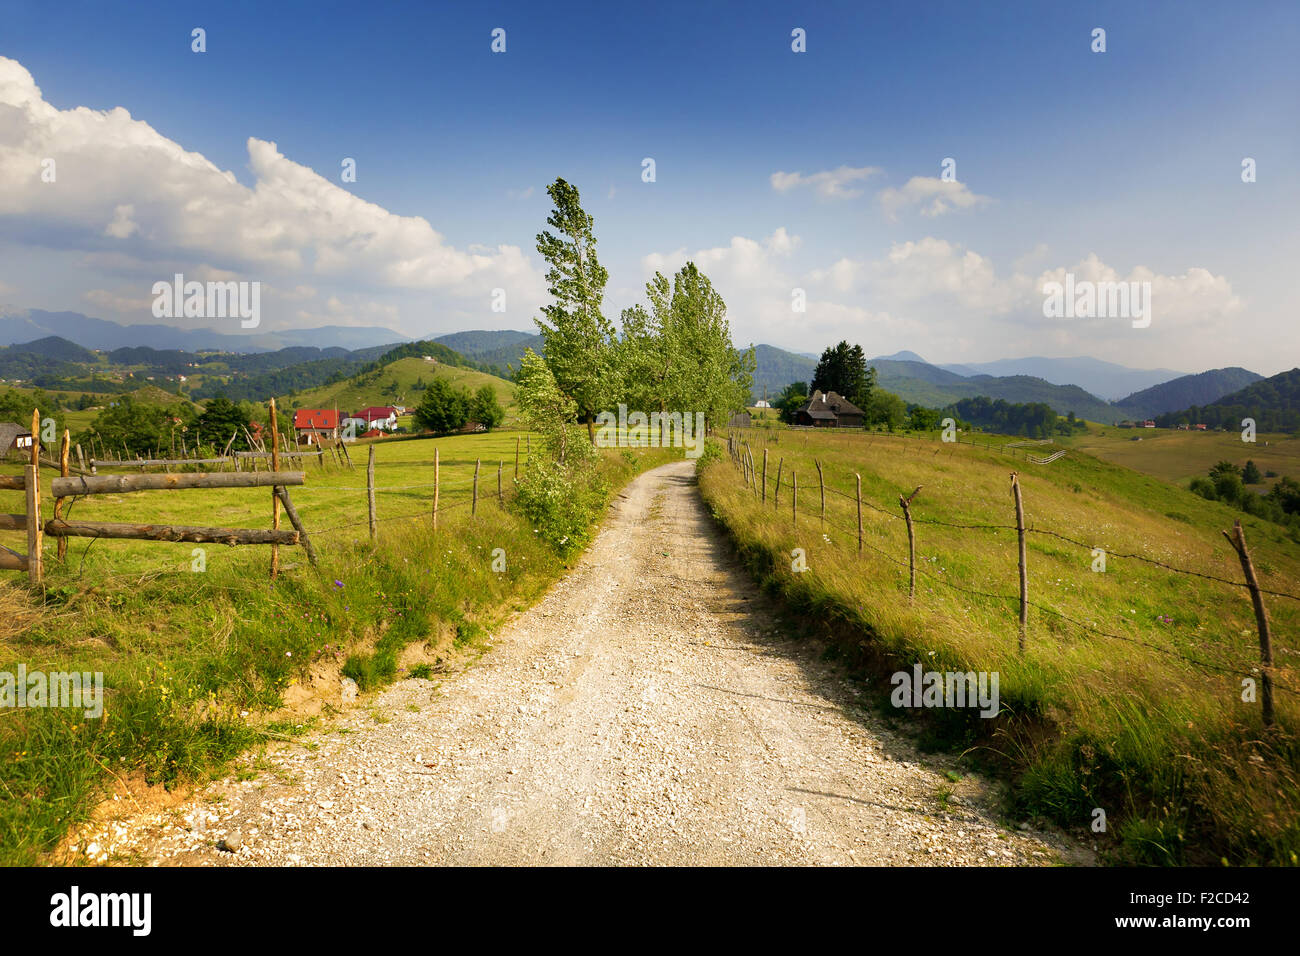 Ländliche Landschaft aus Rumänien - Dorfstraße und Grünland Stockfoto